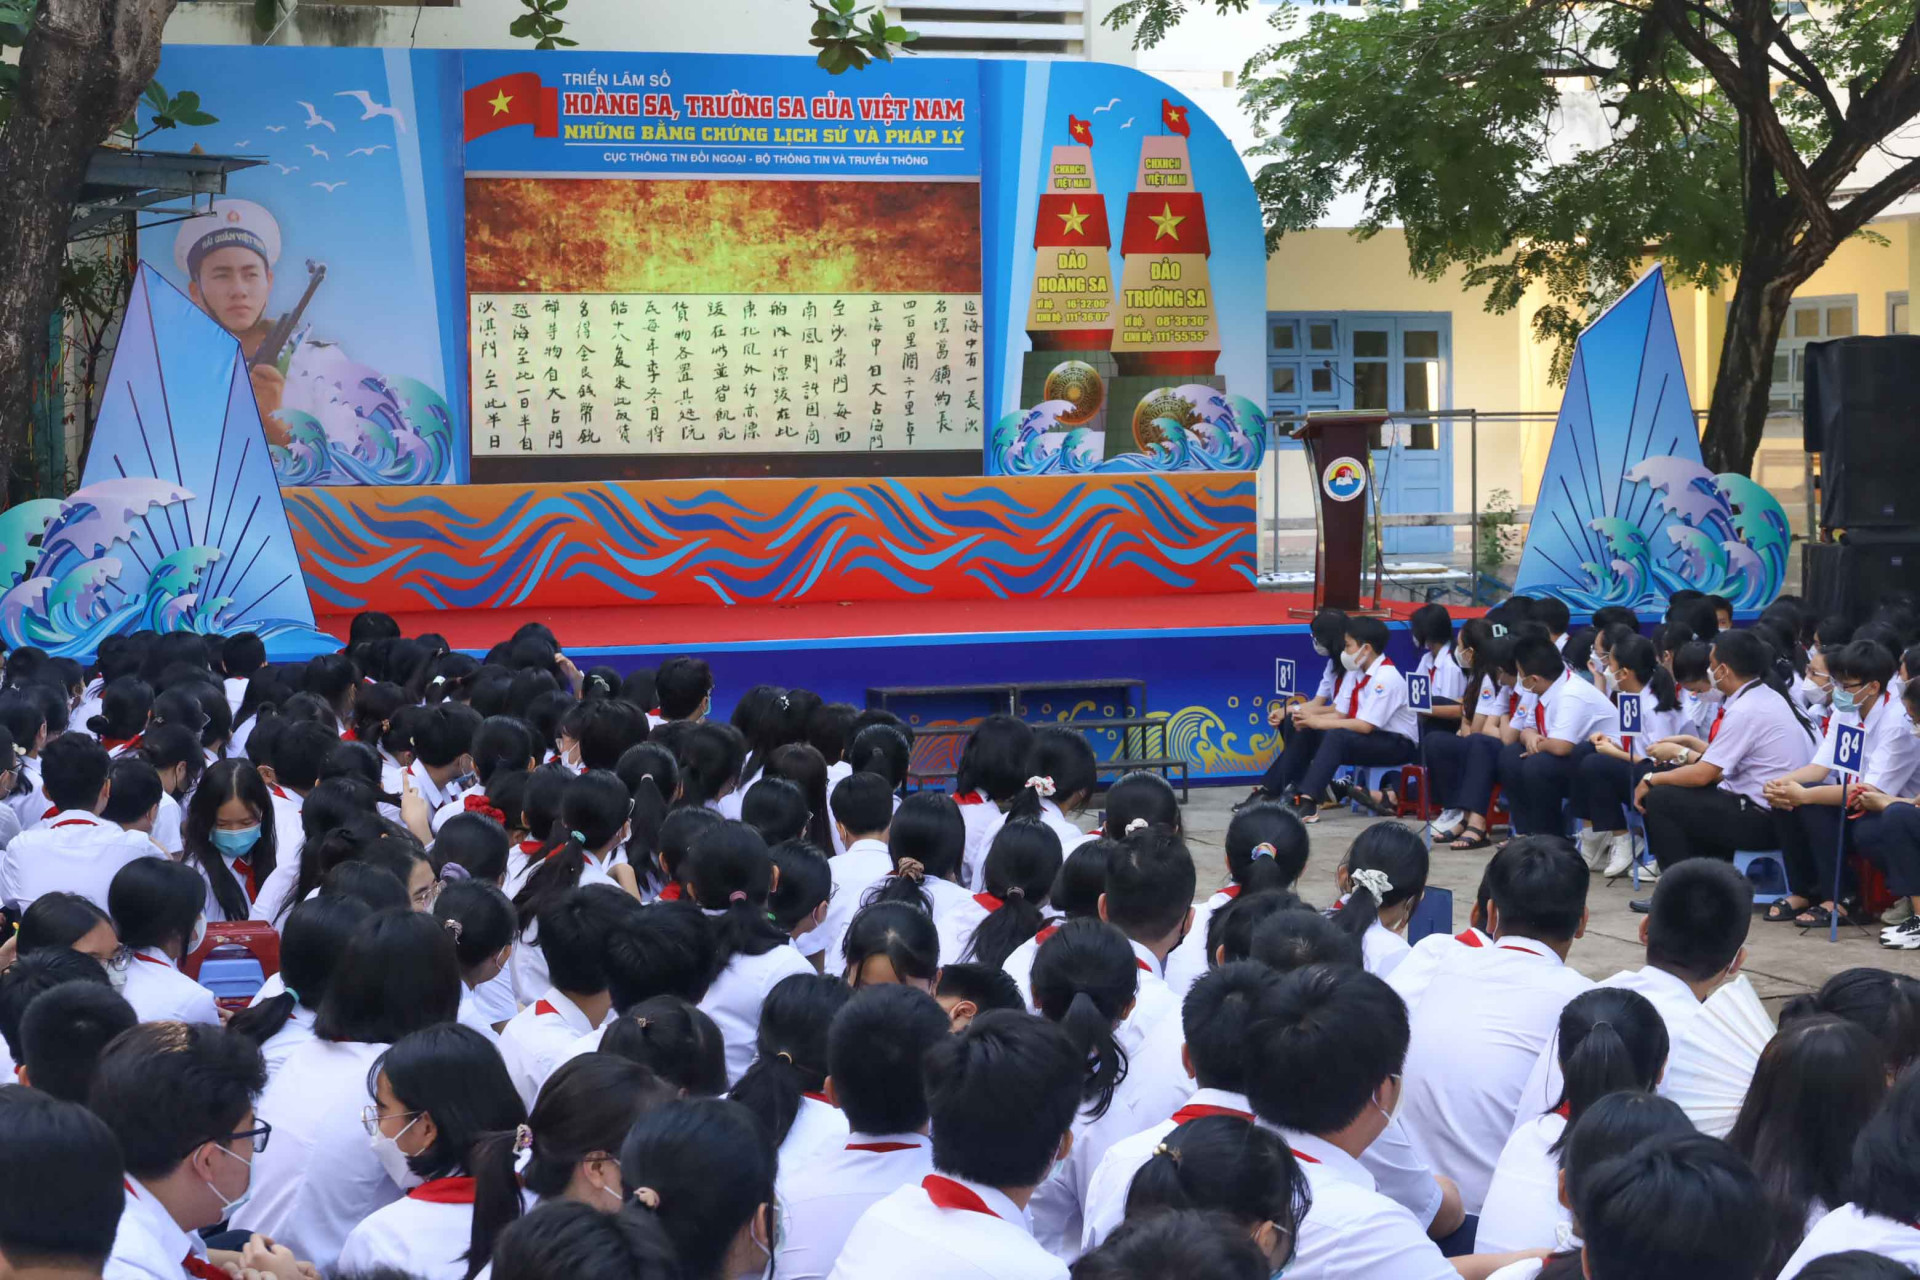 Học sinh Trường THCS Thái Nguyên xem triển lãm số Hoàng Sa, Trường Sa của Việt Nam được trình chiếu trên màn hình. 